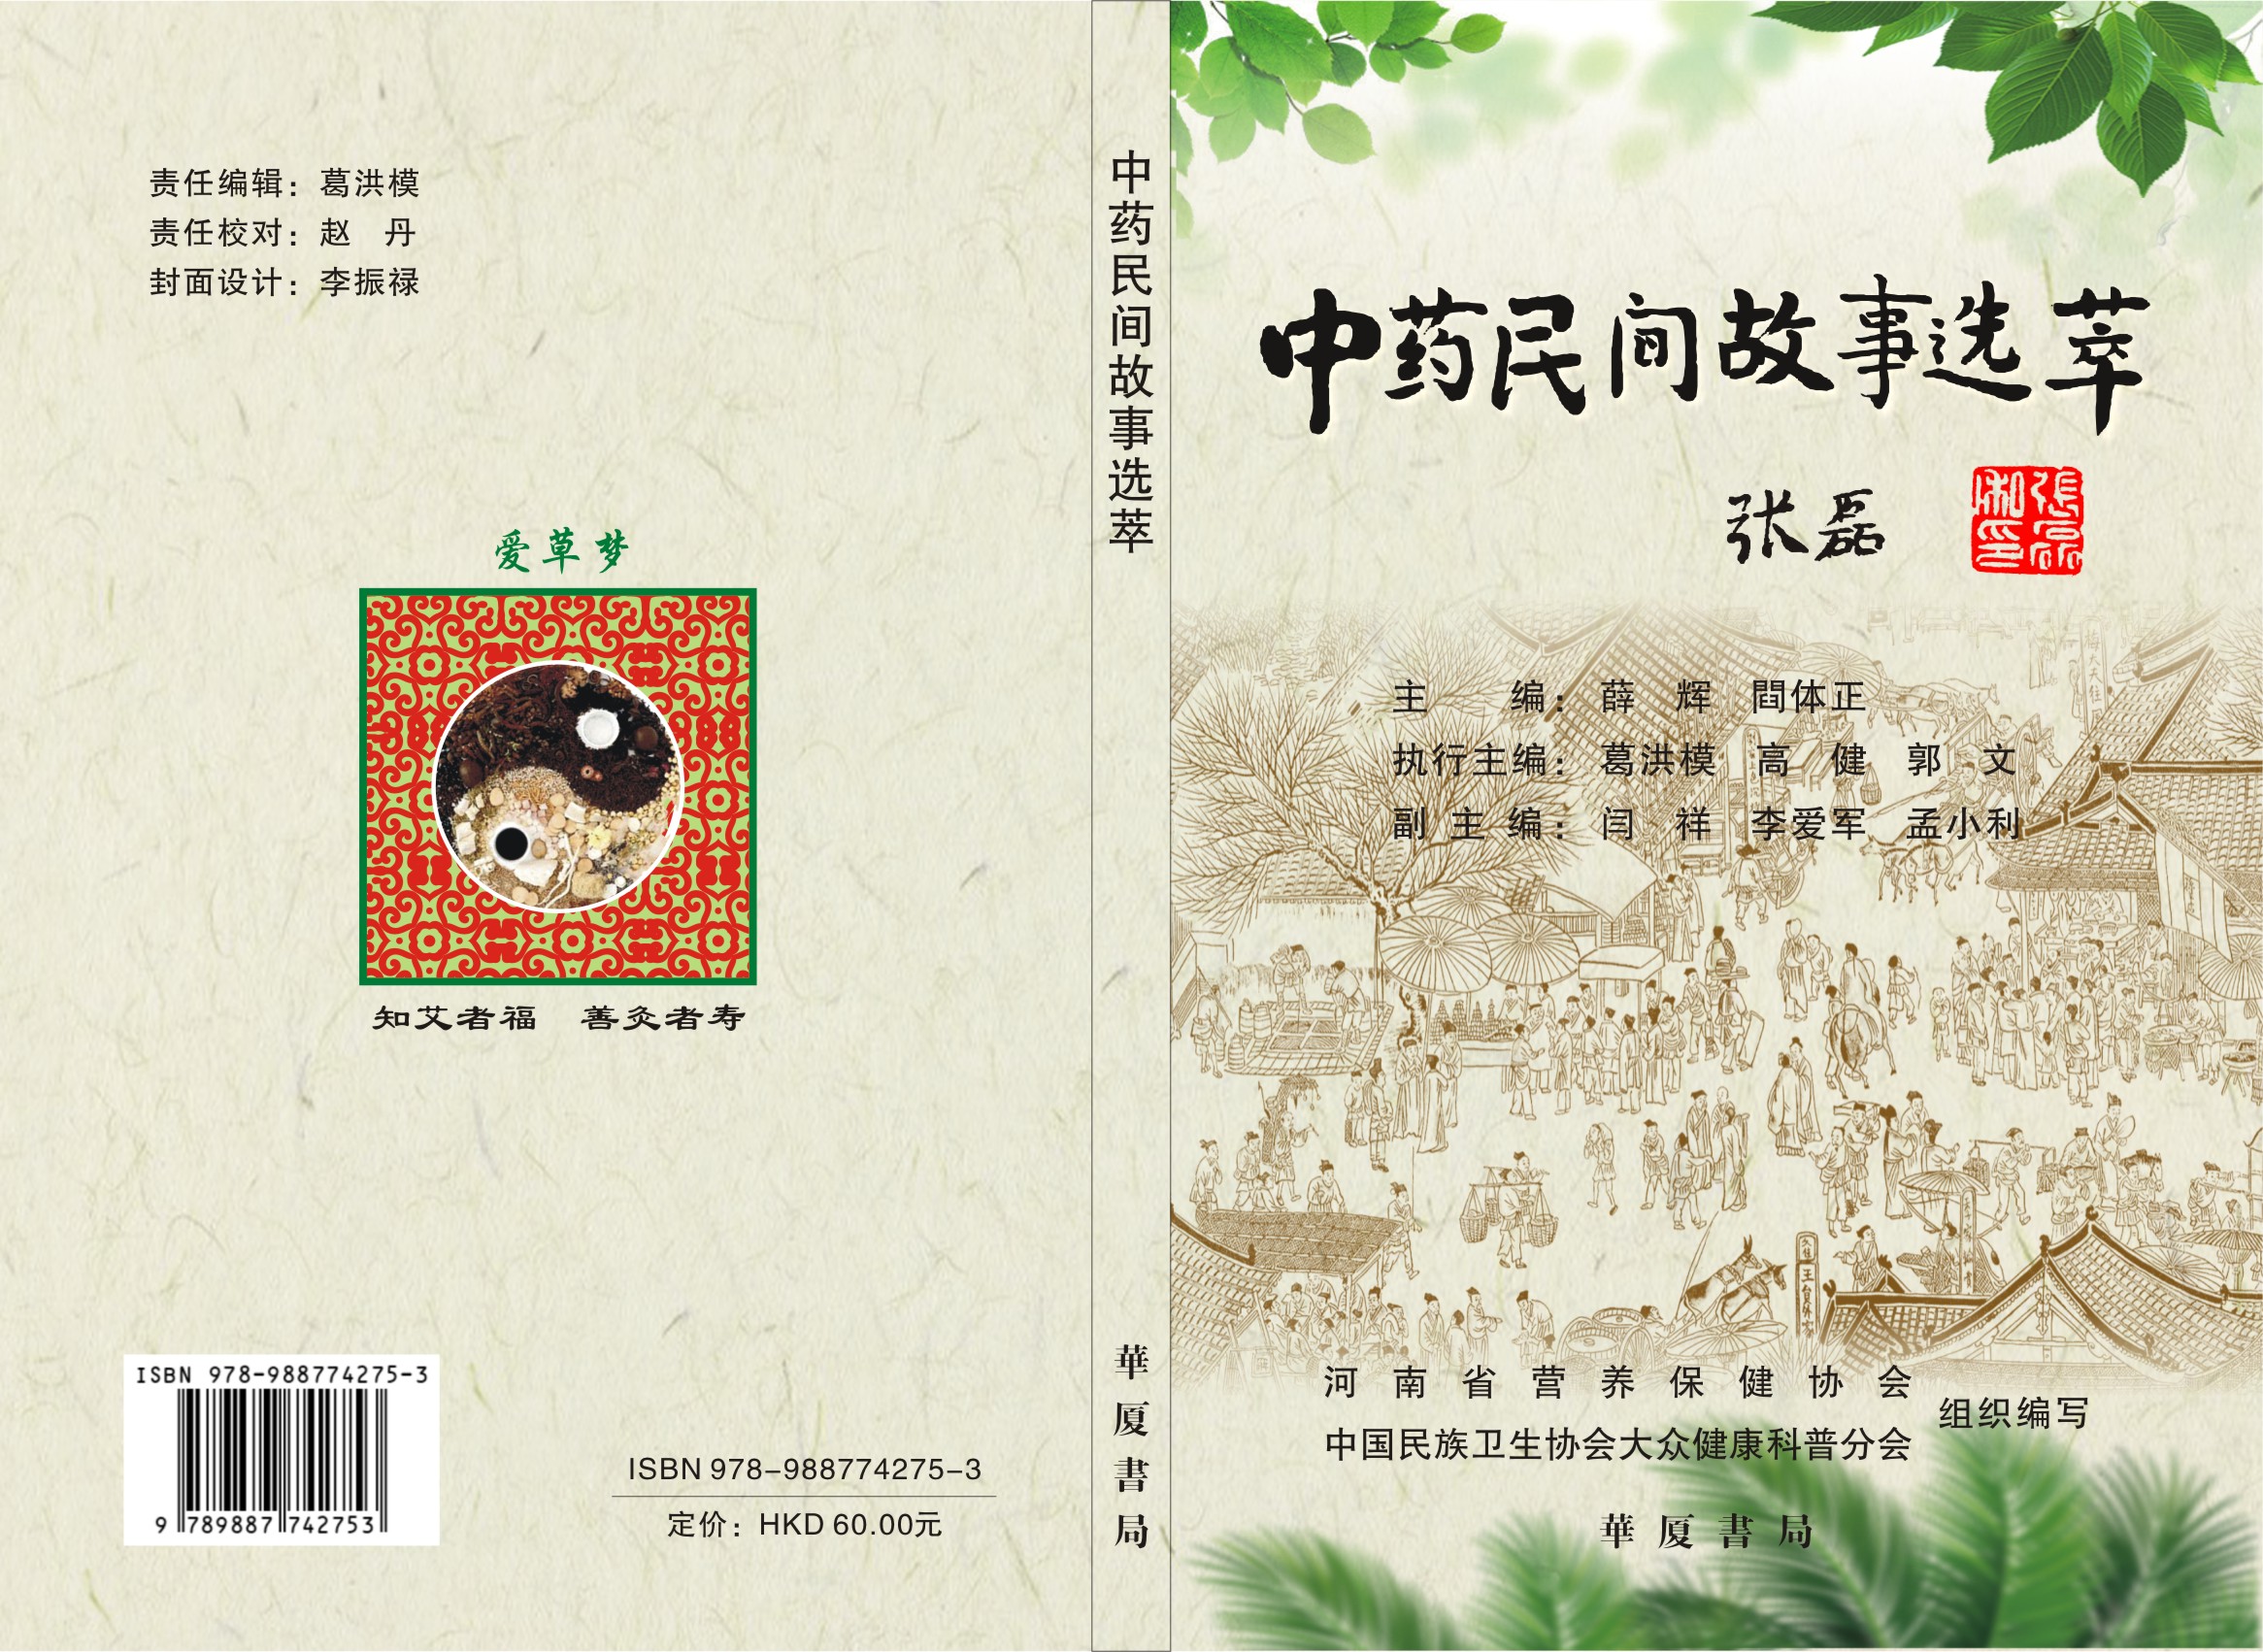 协会编著的科普读物《中药民间故事选萃》由华夏书局正式出版发行